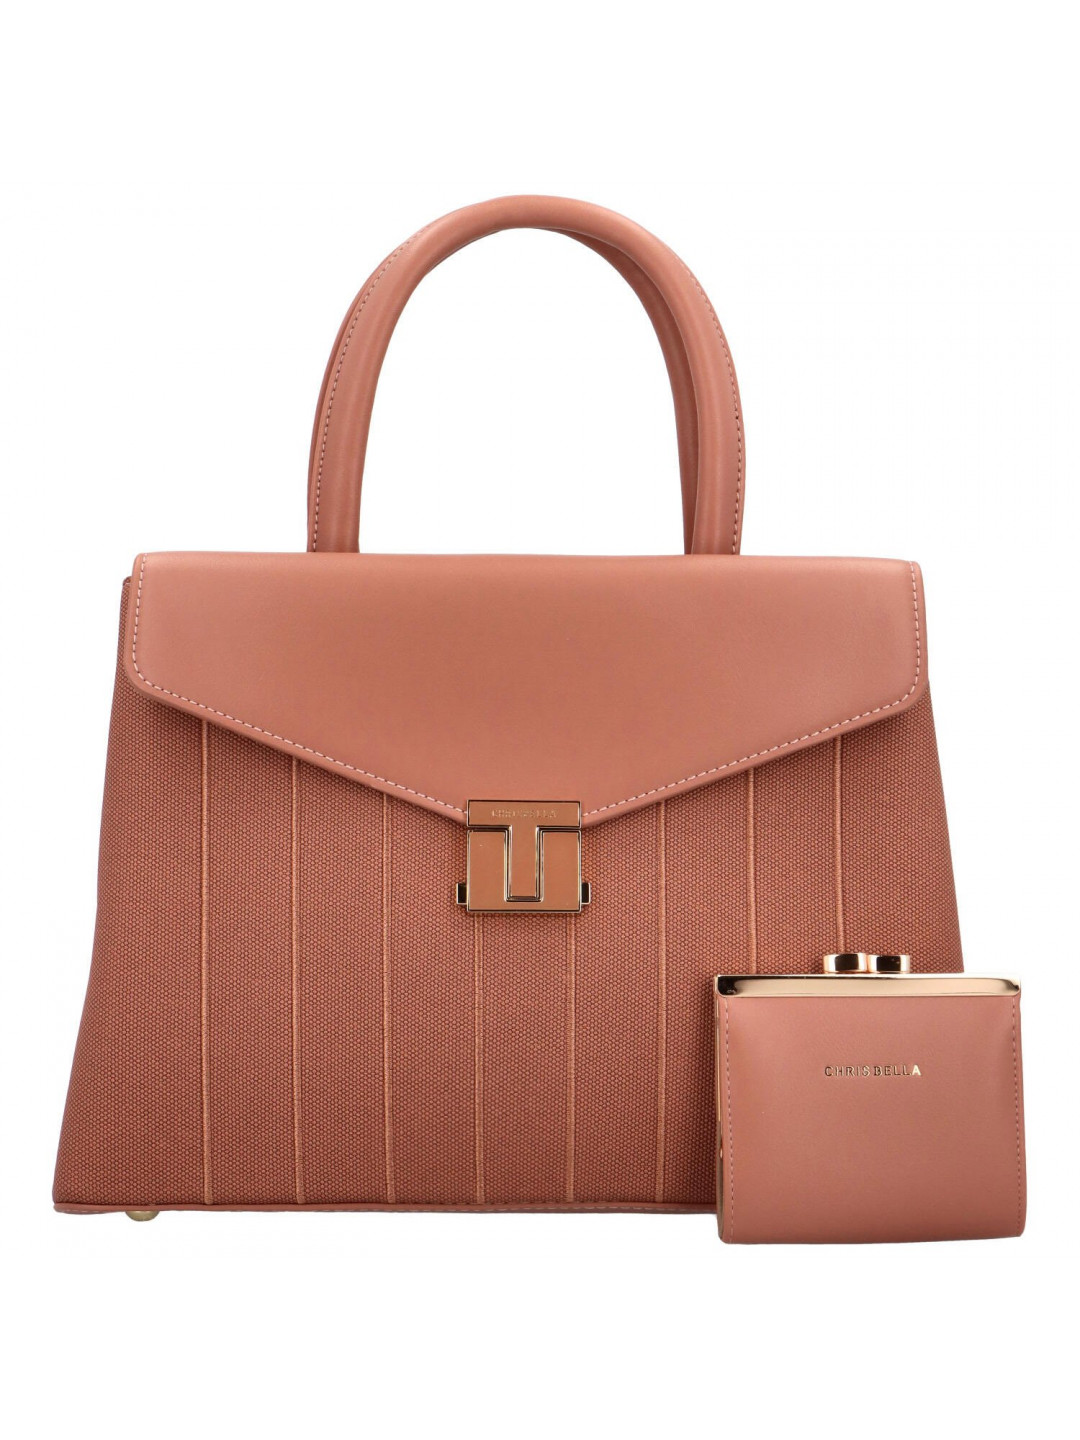 Dámská kabelka do ruky růžová – Chrisbella Luisina